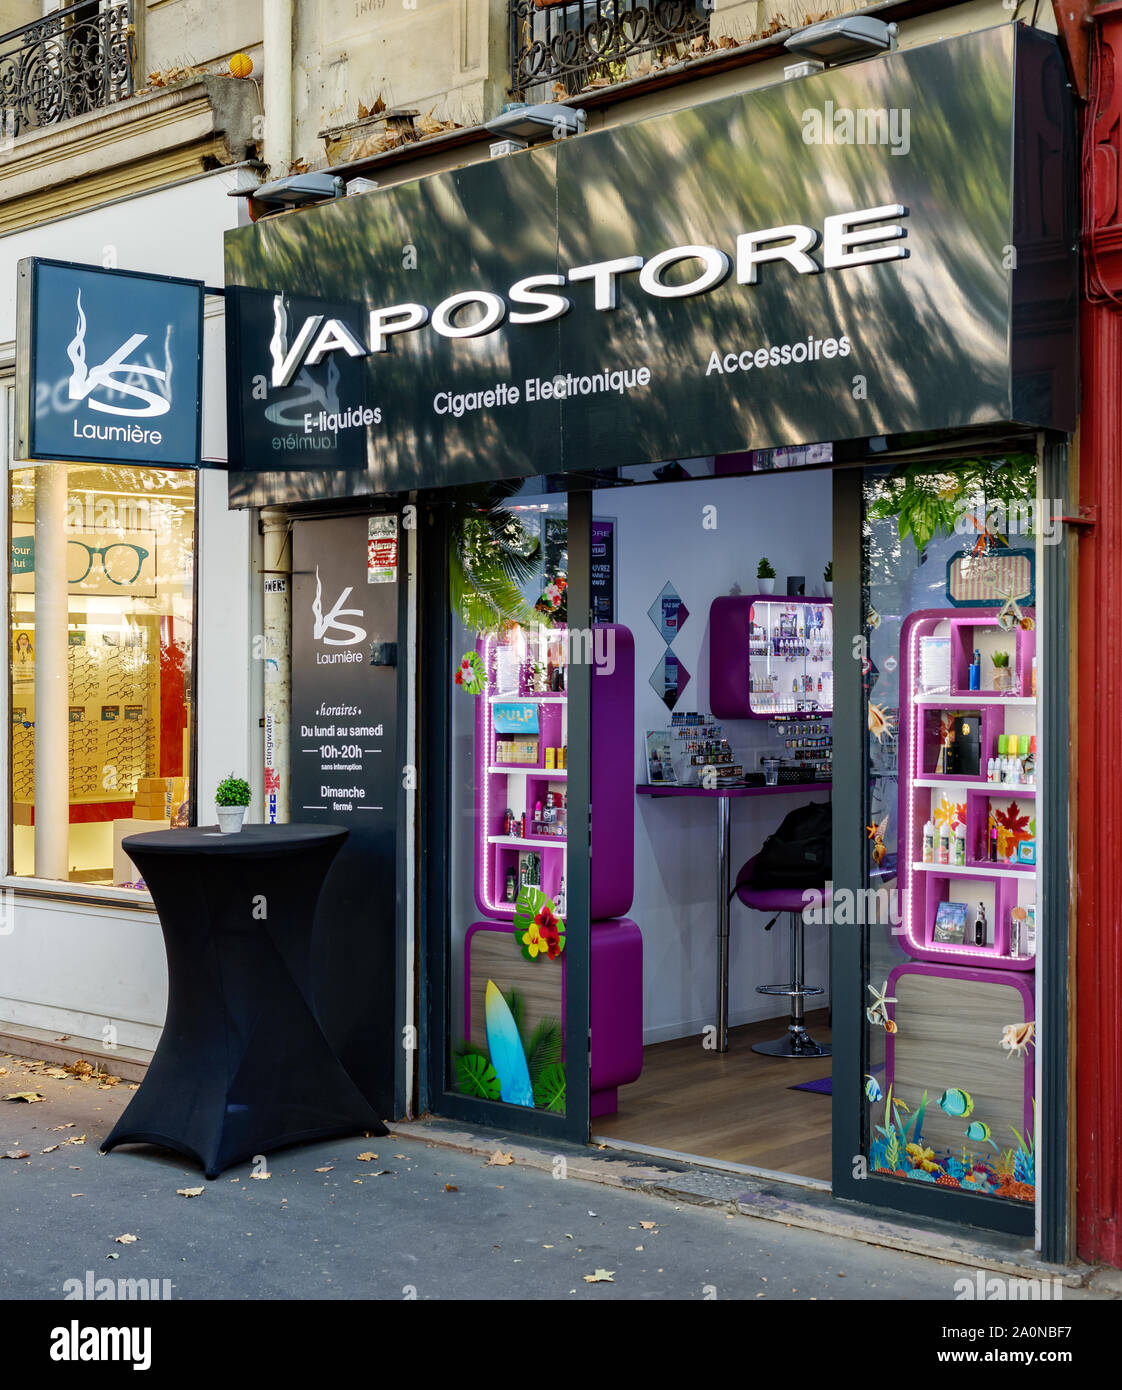 PARIS, FRANCE - 20 septembre 2019 : E-cigarette store encore ouvert dans une rue parisienne alors que de plus en plus de membres sont l'interdiction de ces produits. Banque D'Images